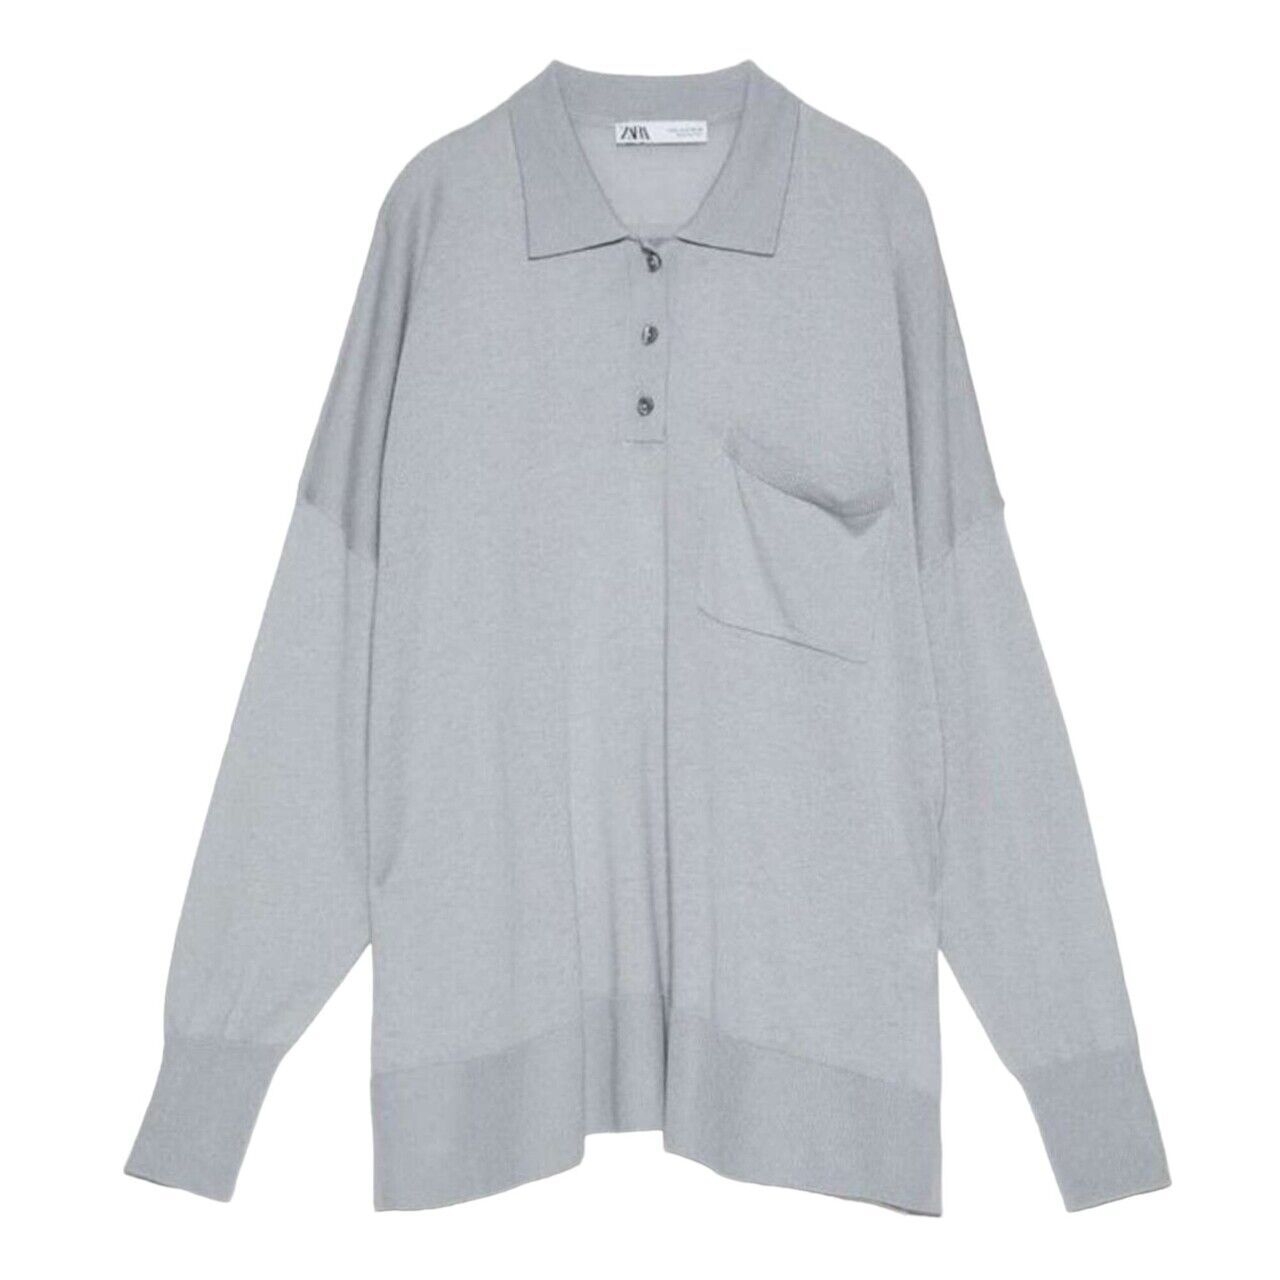 Zara Light Grey Kaos